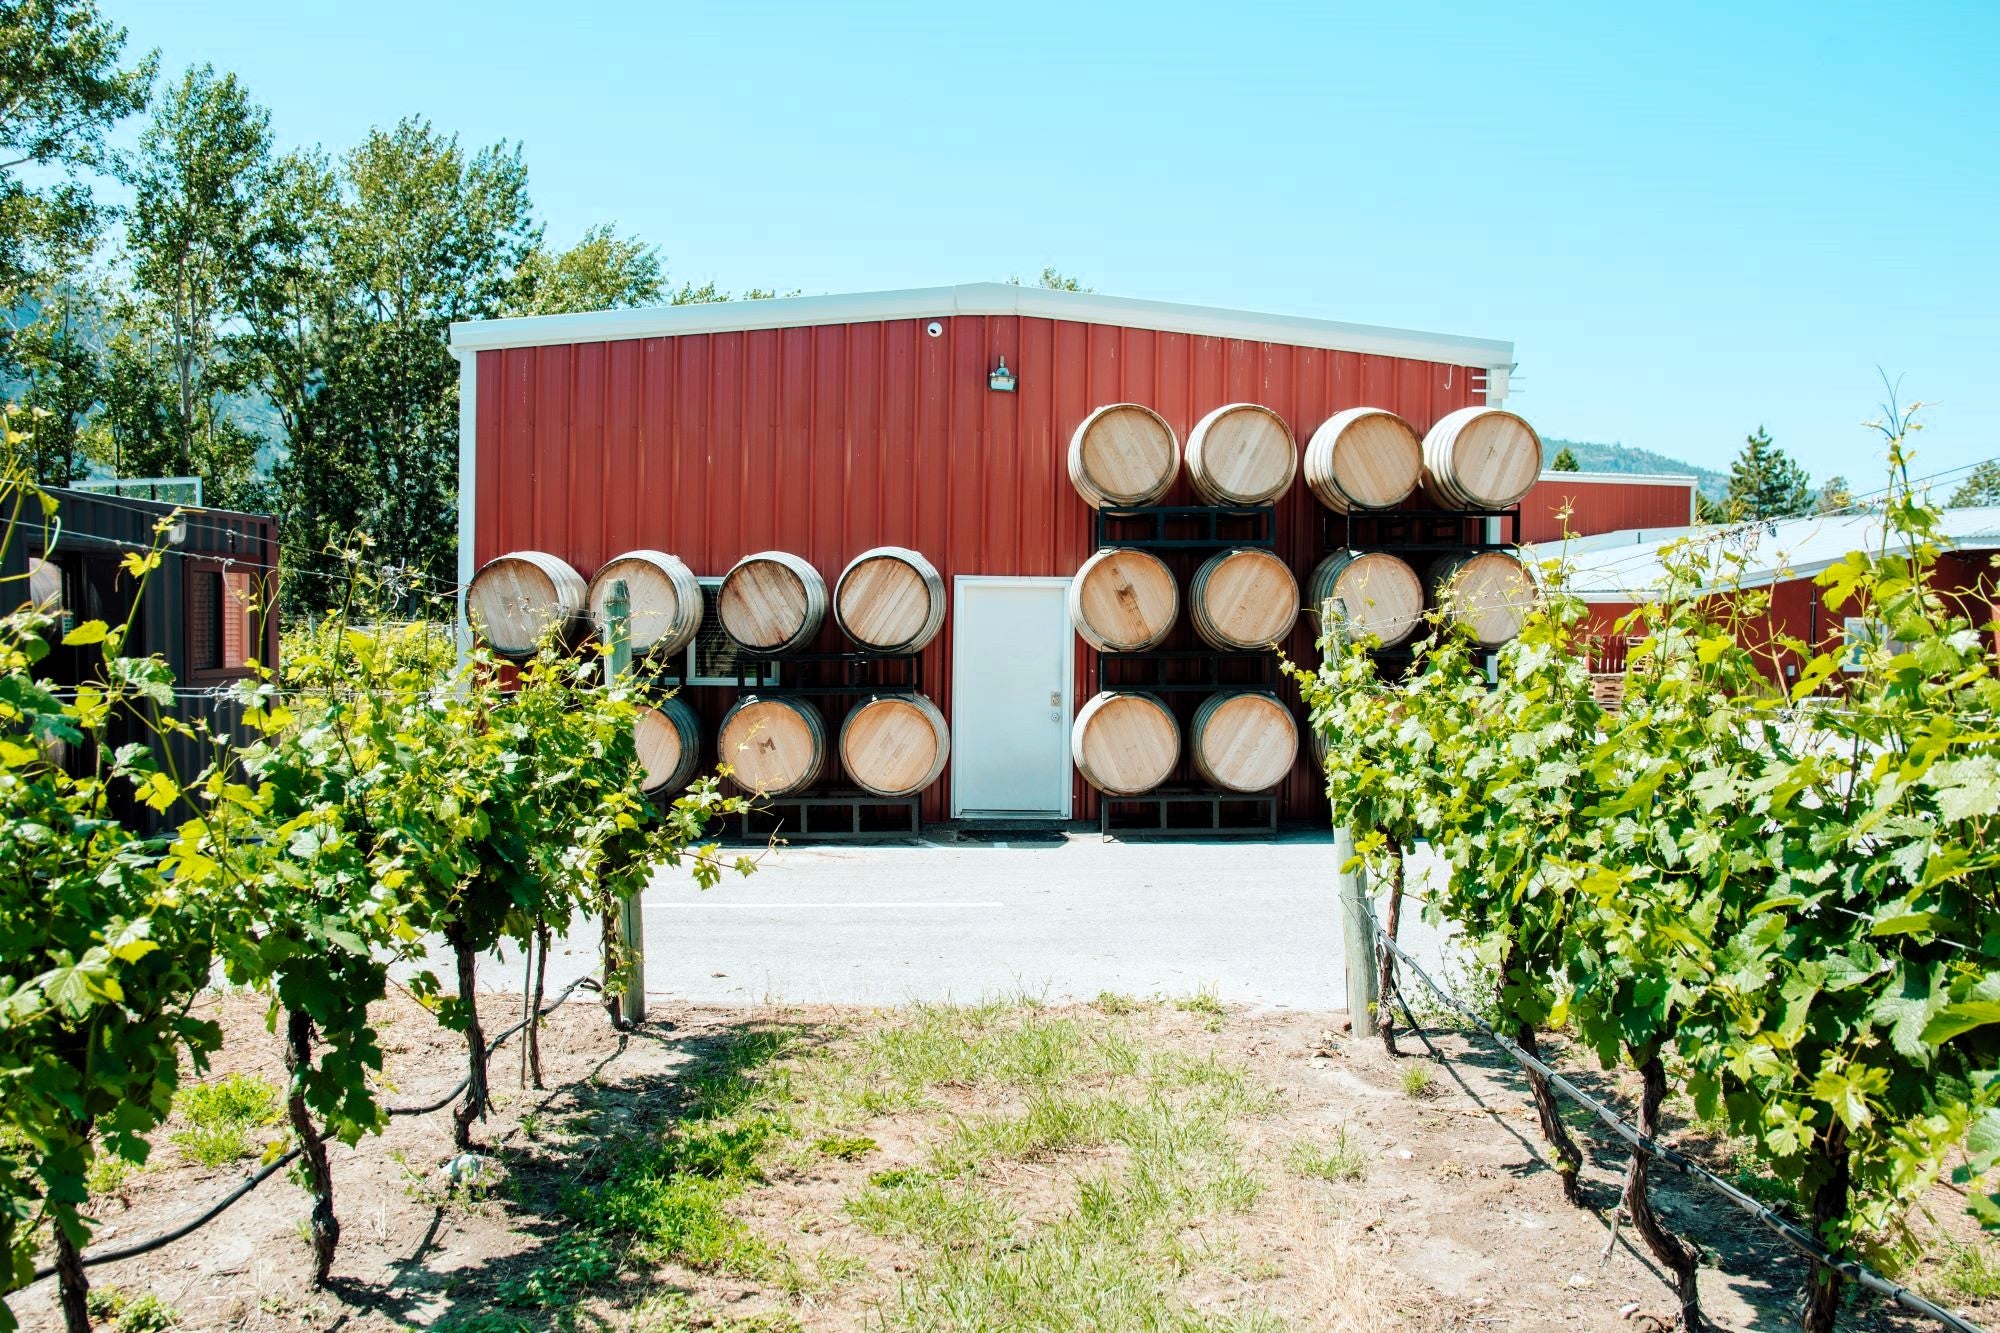 Vineyard and barrels